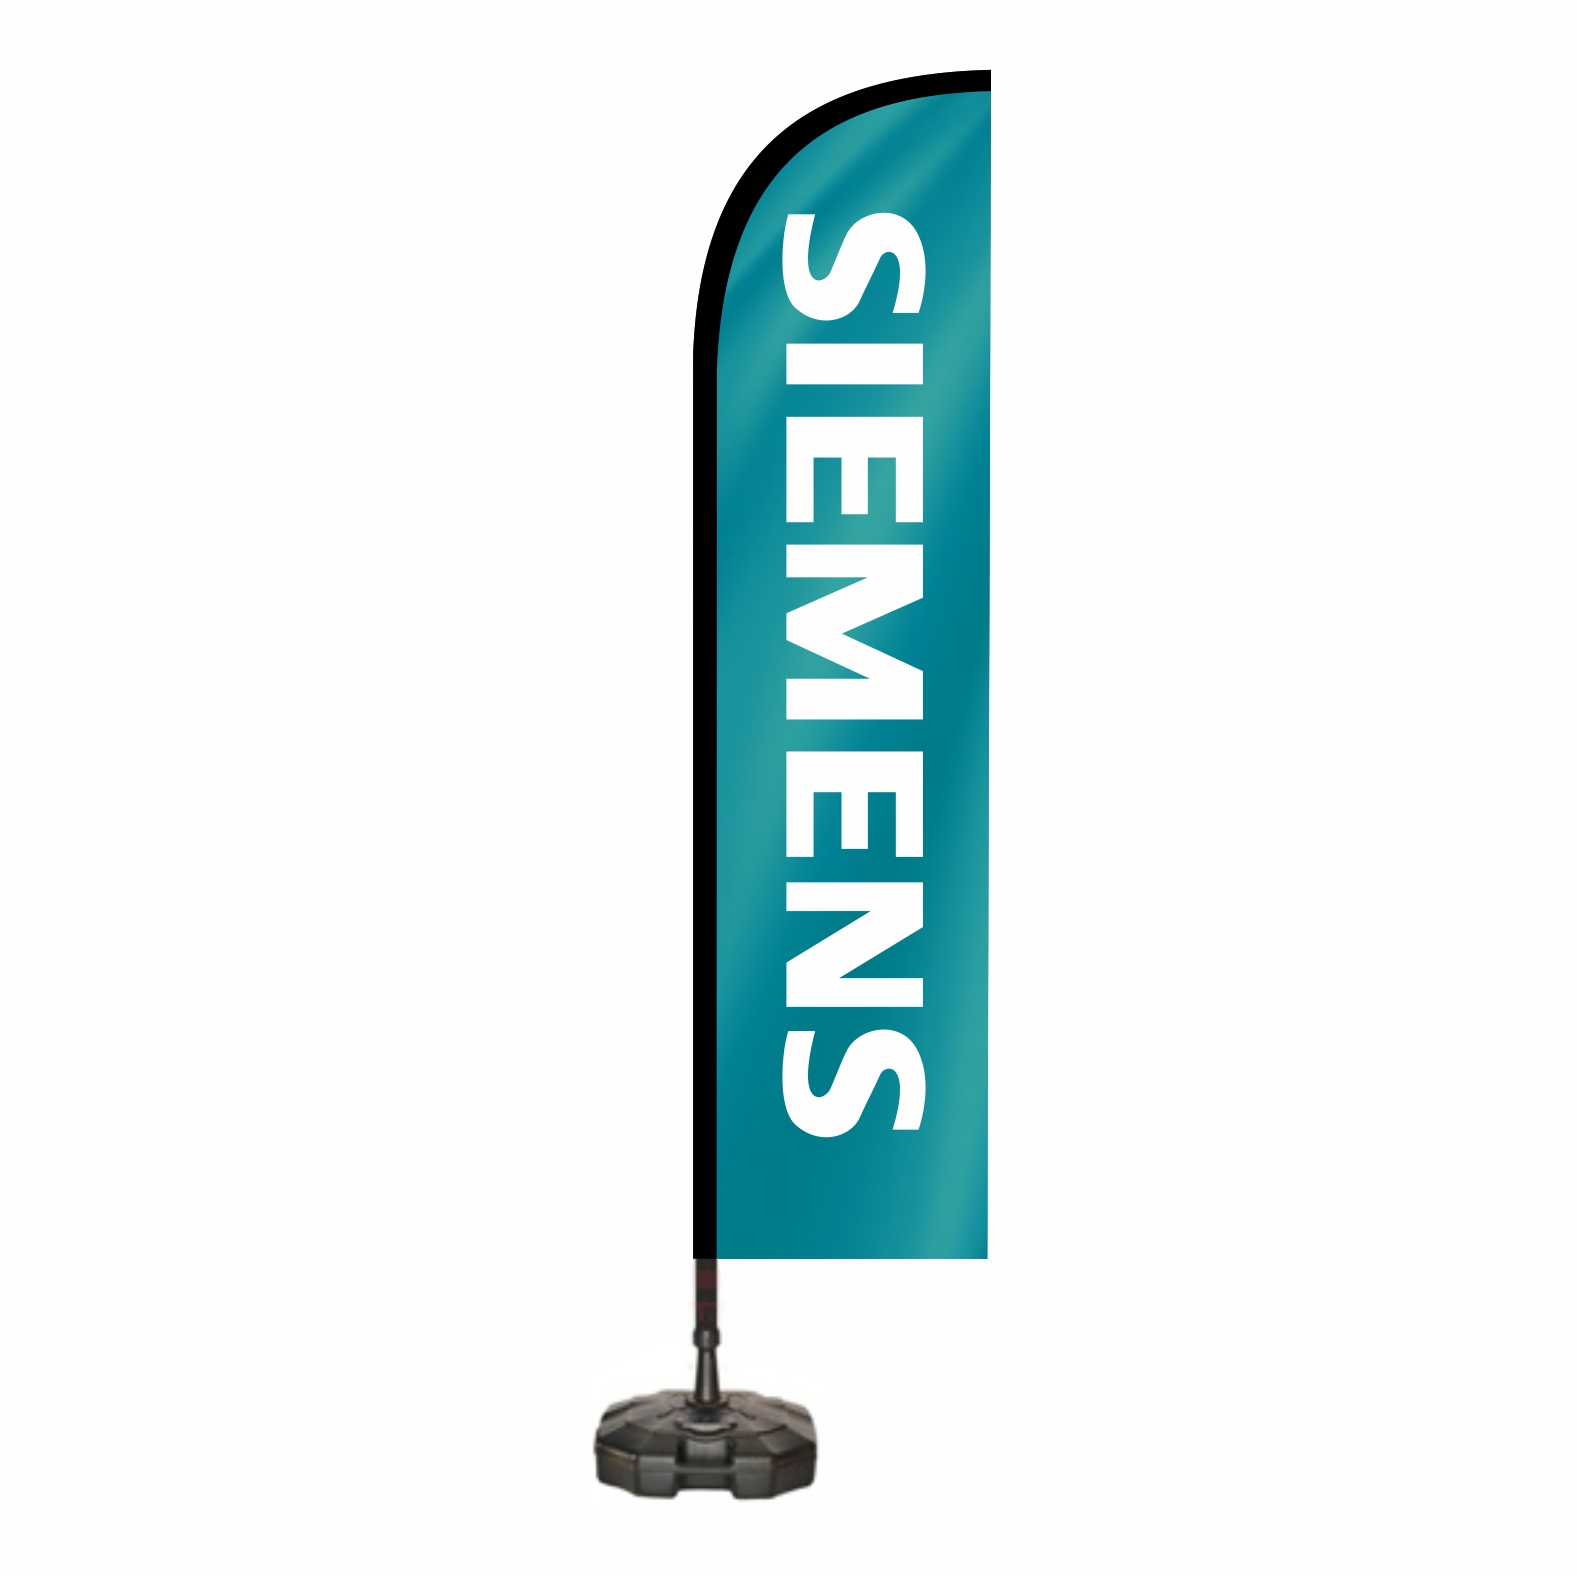 Siemens Yelken Bayraklar retimi ve Sat